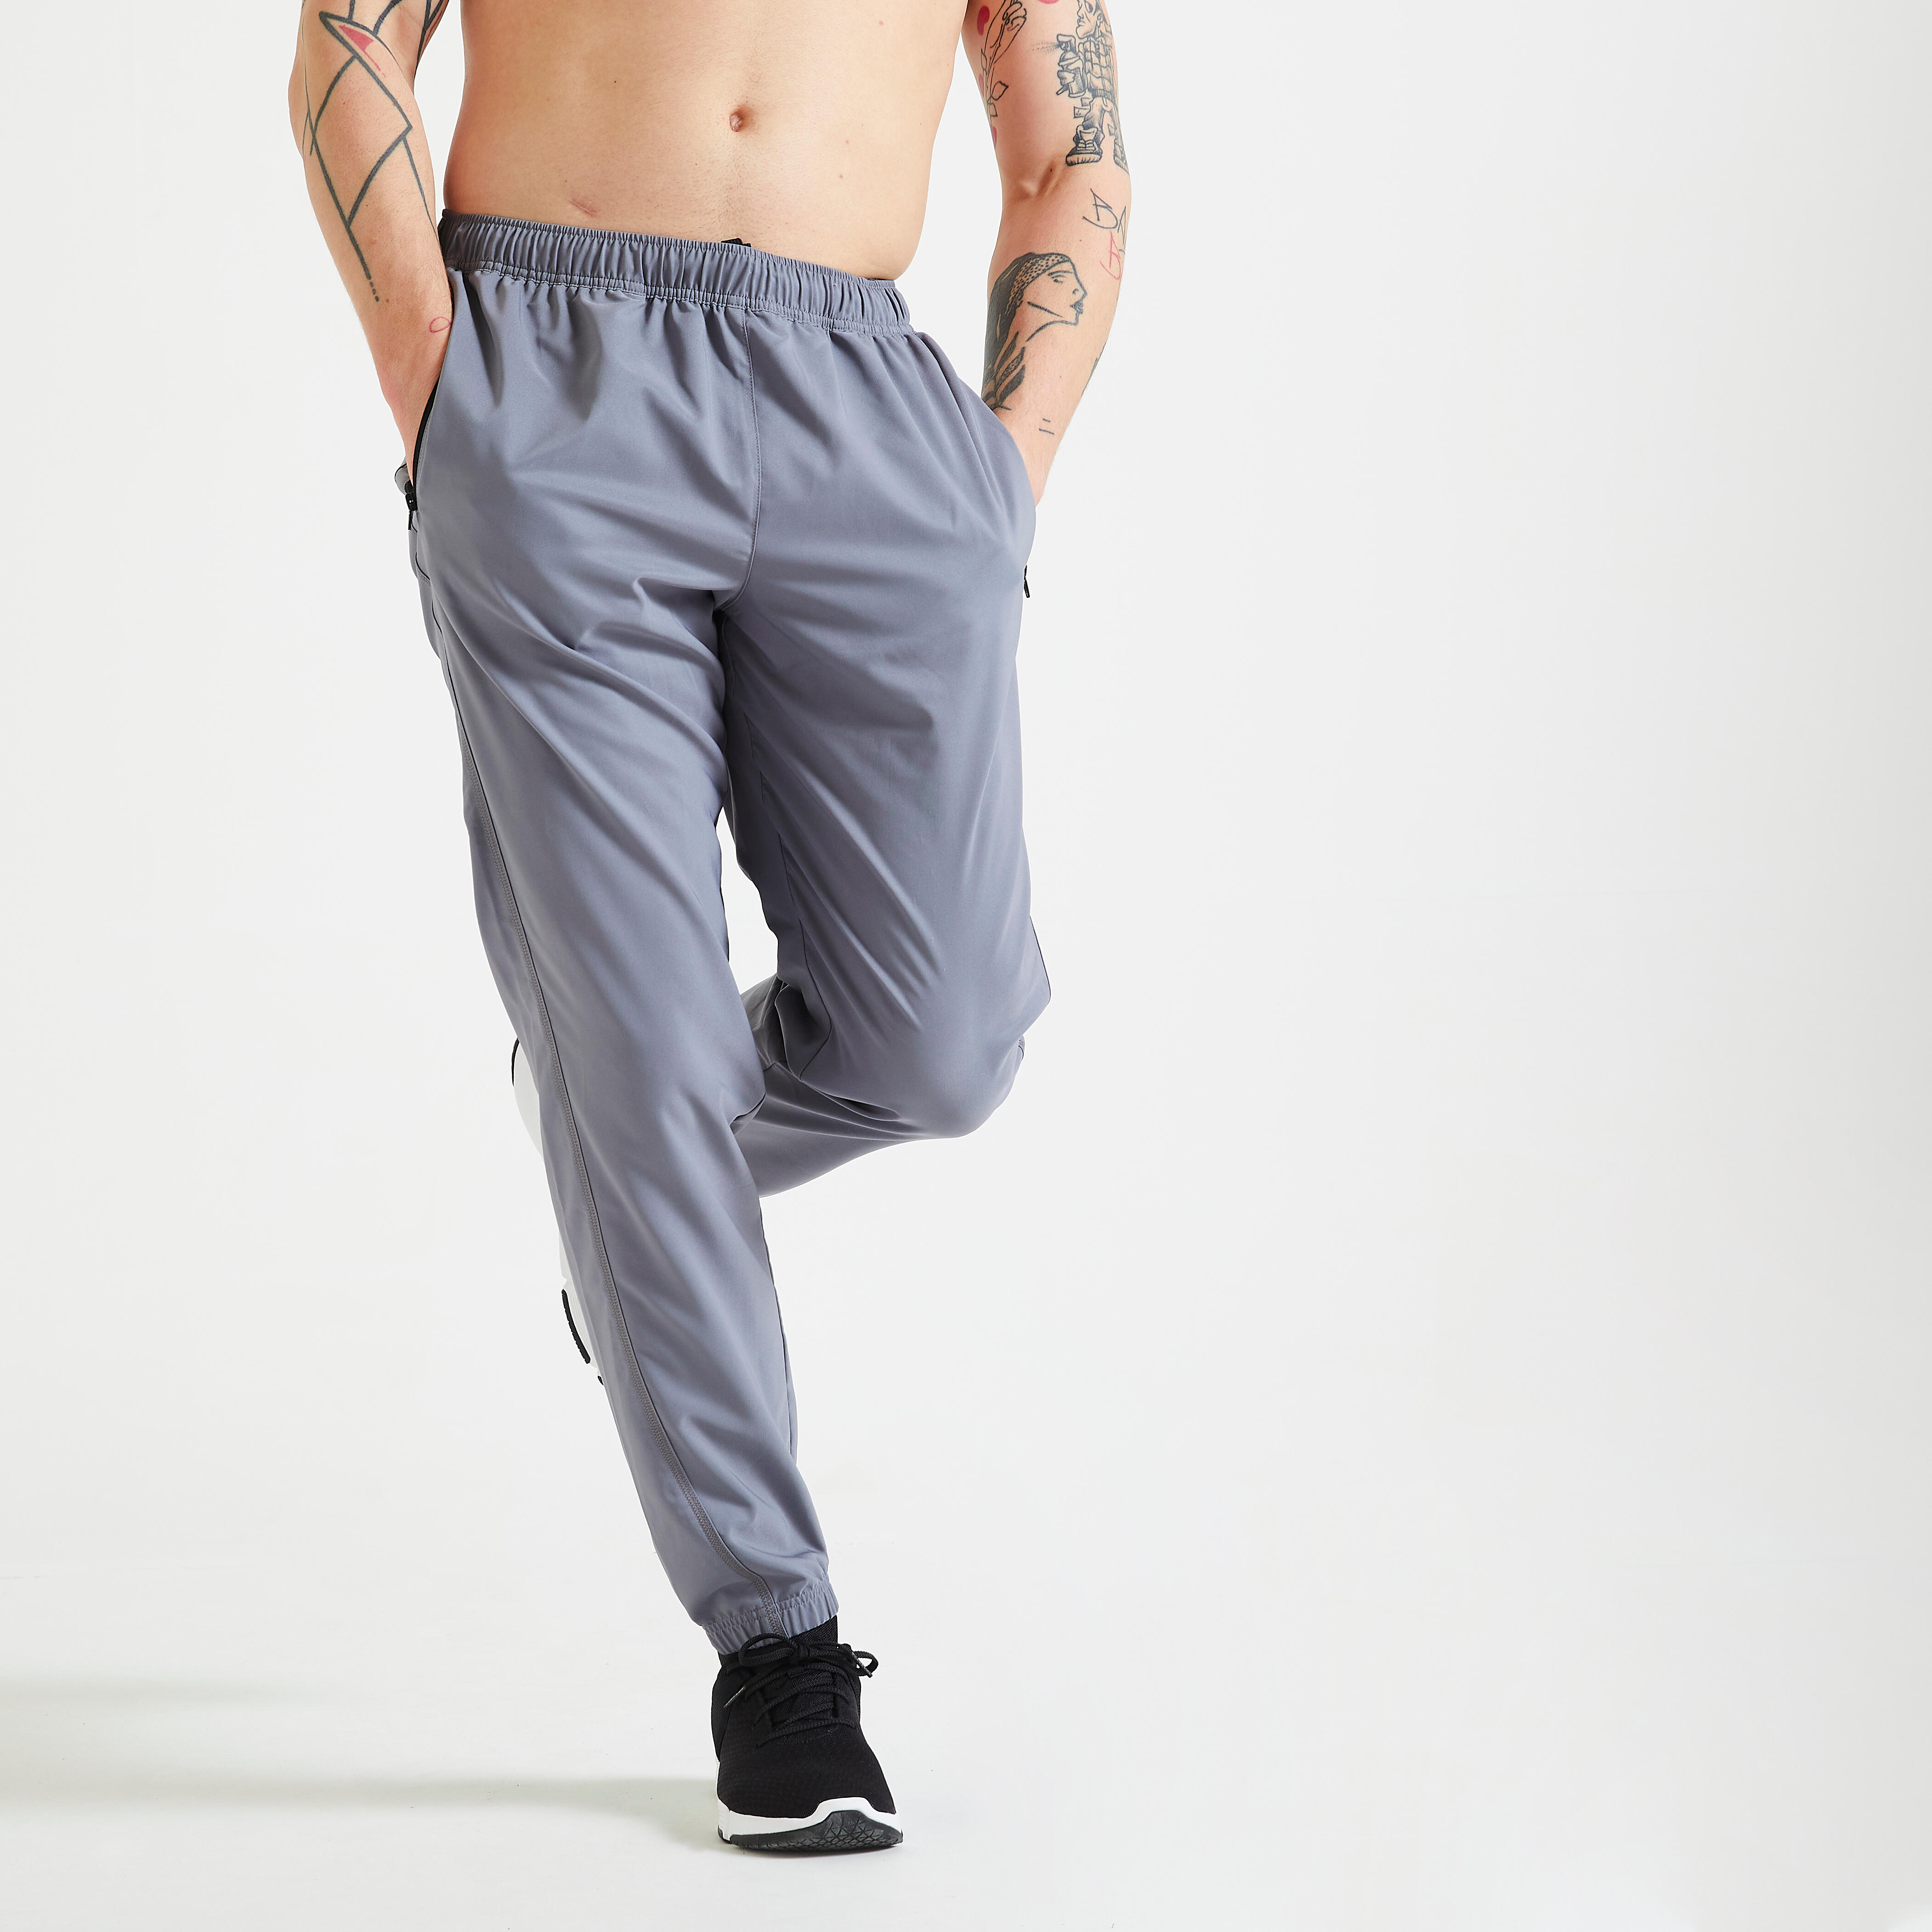 Pantalon de trening 120 fitness essential respirant gri bărbați La Oferta Online decathlon imagine La Oferta Online